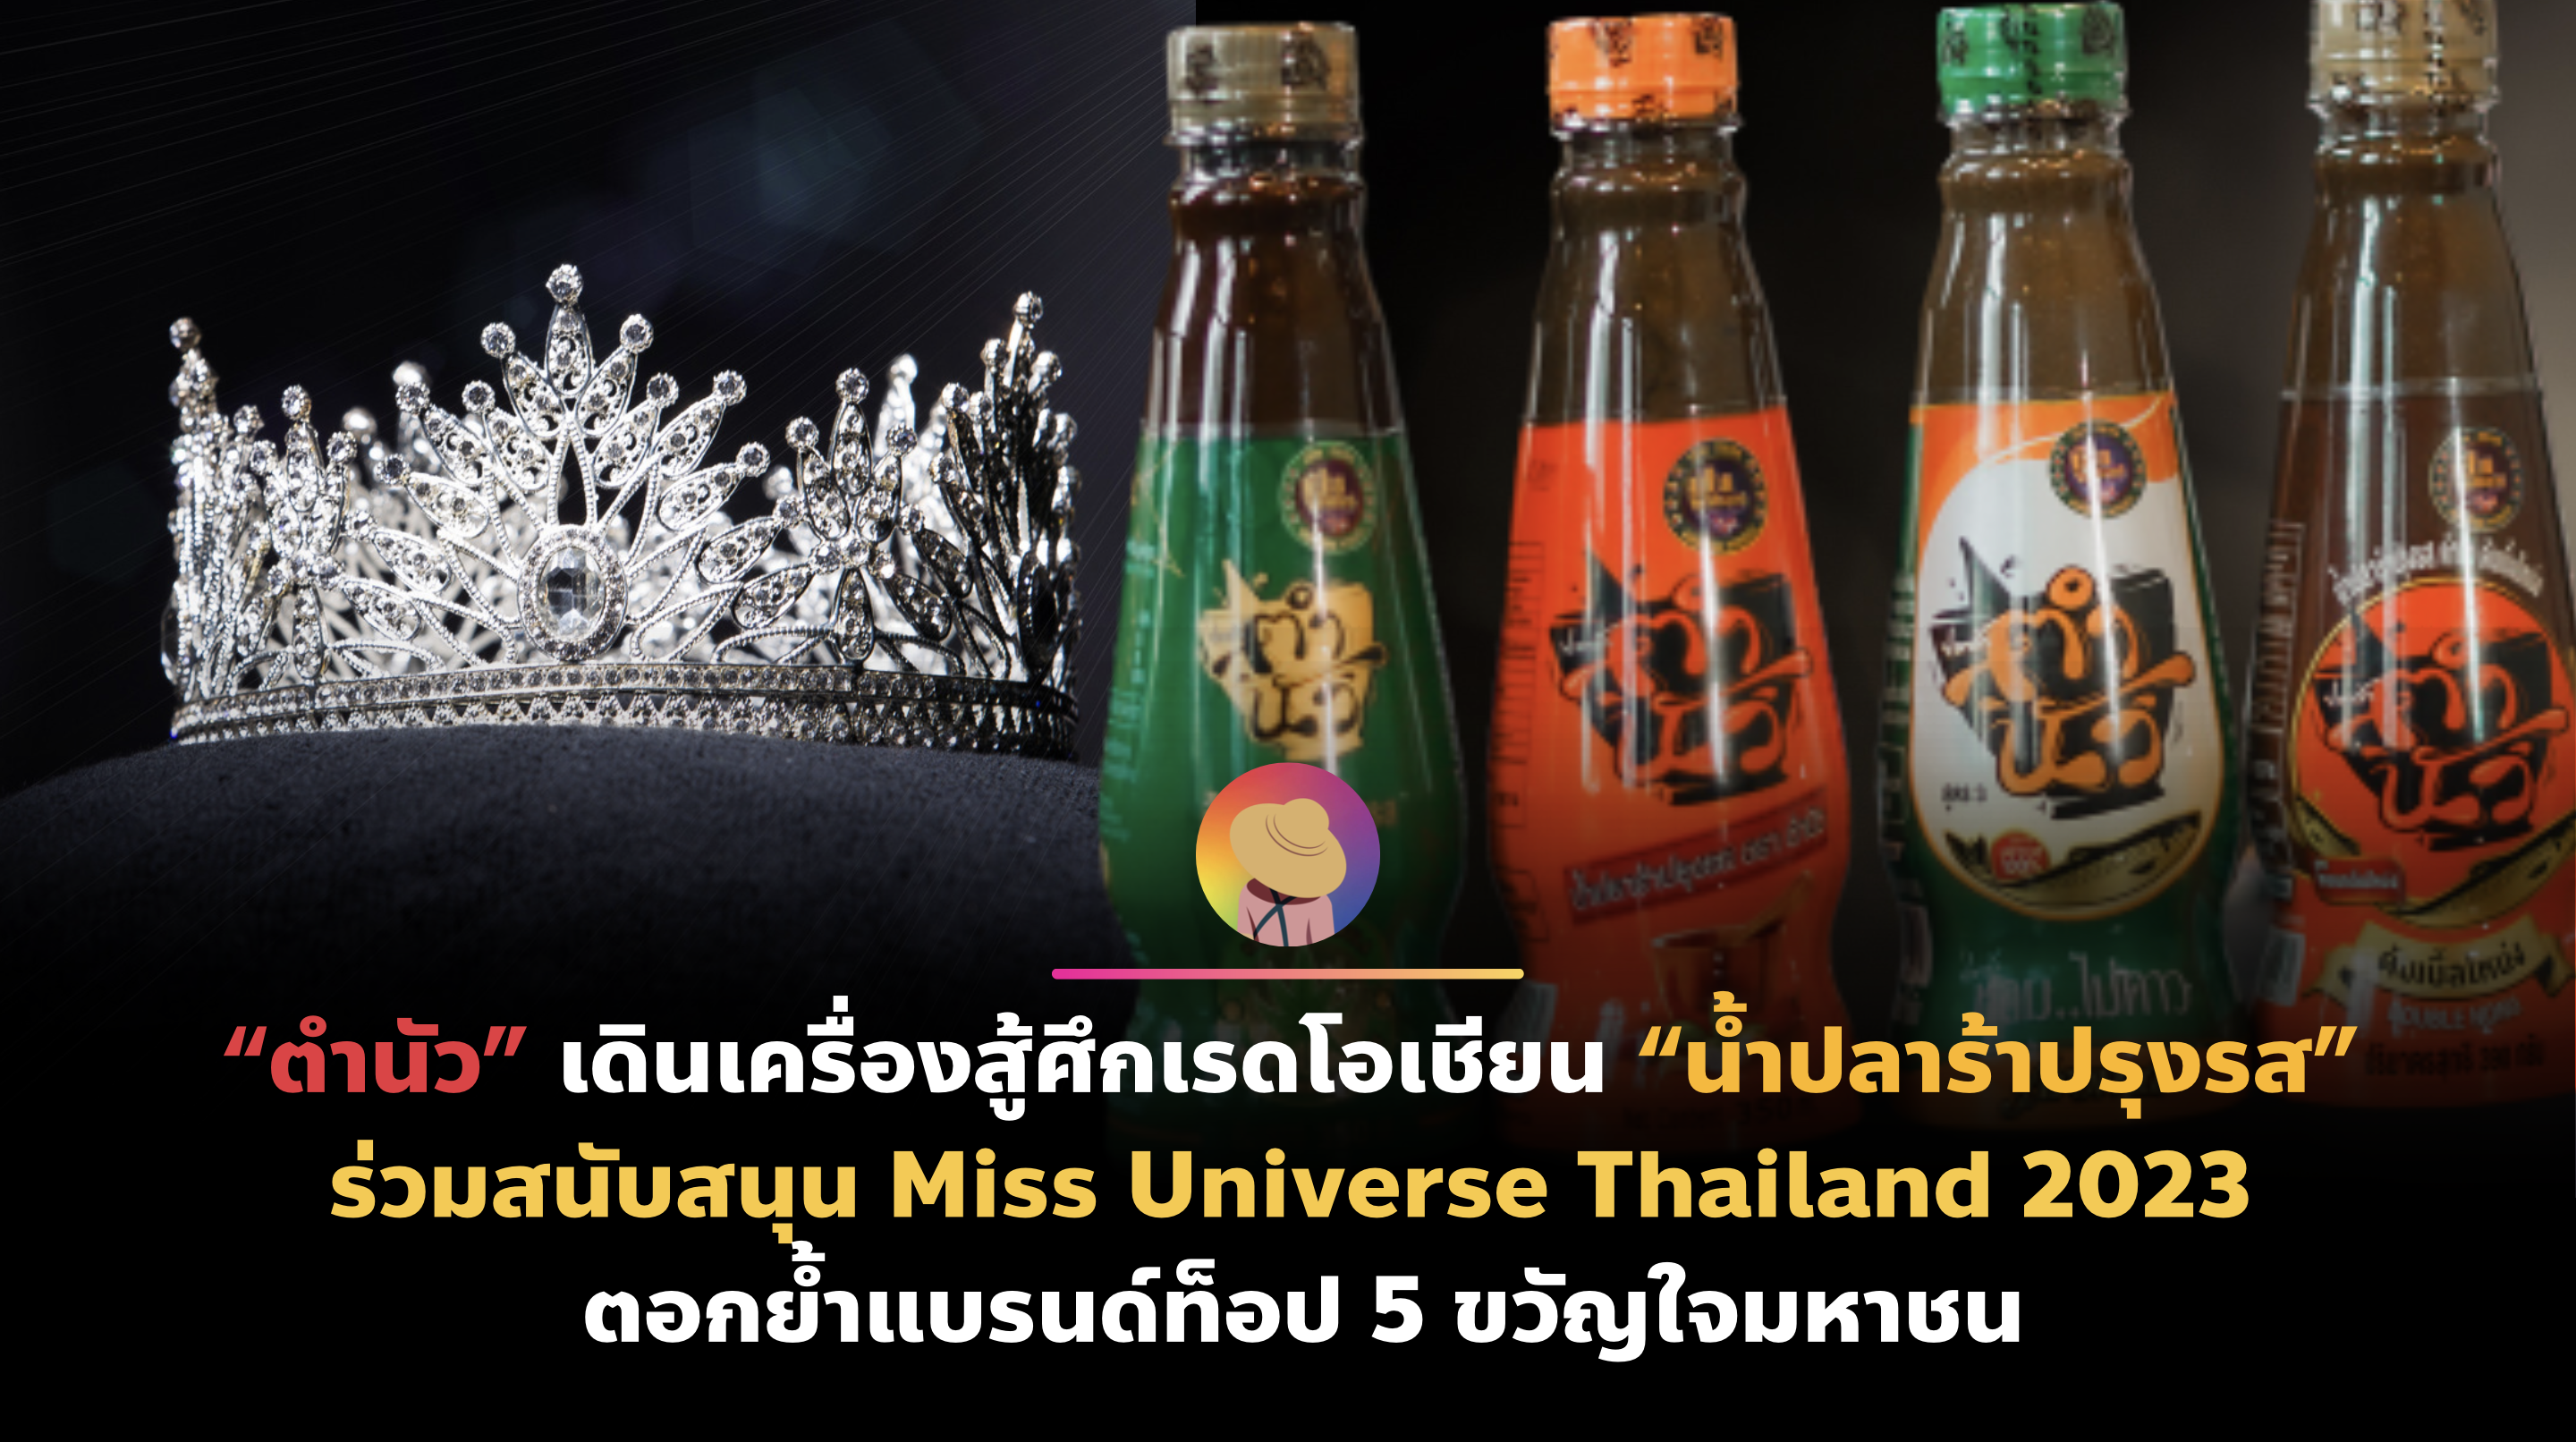 “ตำนัว” เดินเครื่องสู้ศึกเรดโอเชียน “น้ำปลาร้าปรุงรส” ร่วมสนับสนุน Miss Universe Thailand 2023 ตอกย้ำแบรนด์ท็อป 5 ขวัญใจมหาชน